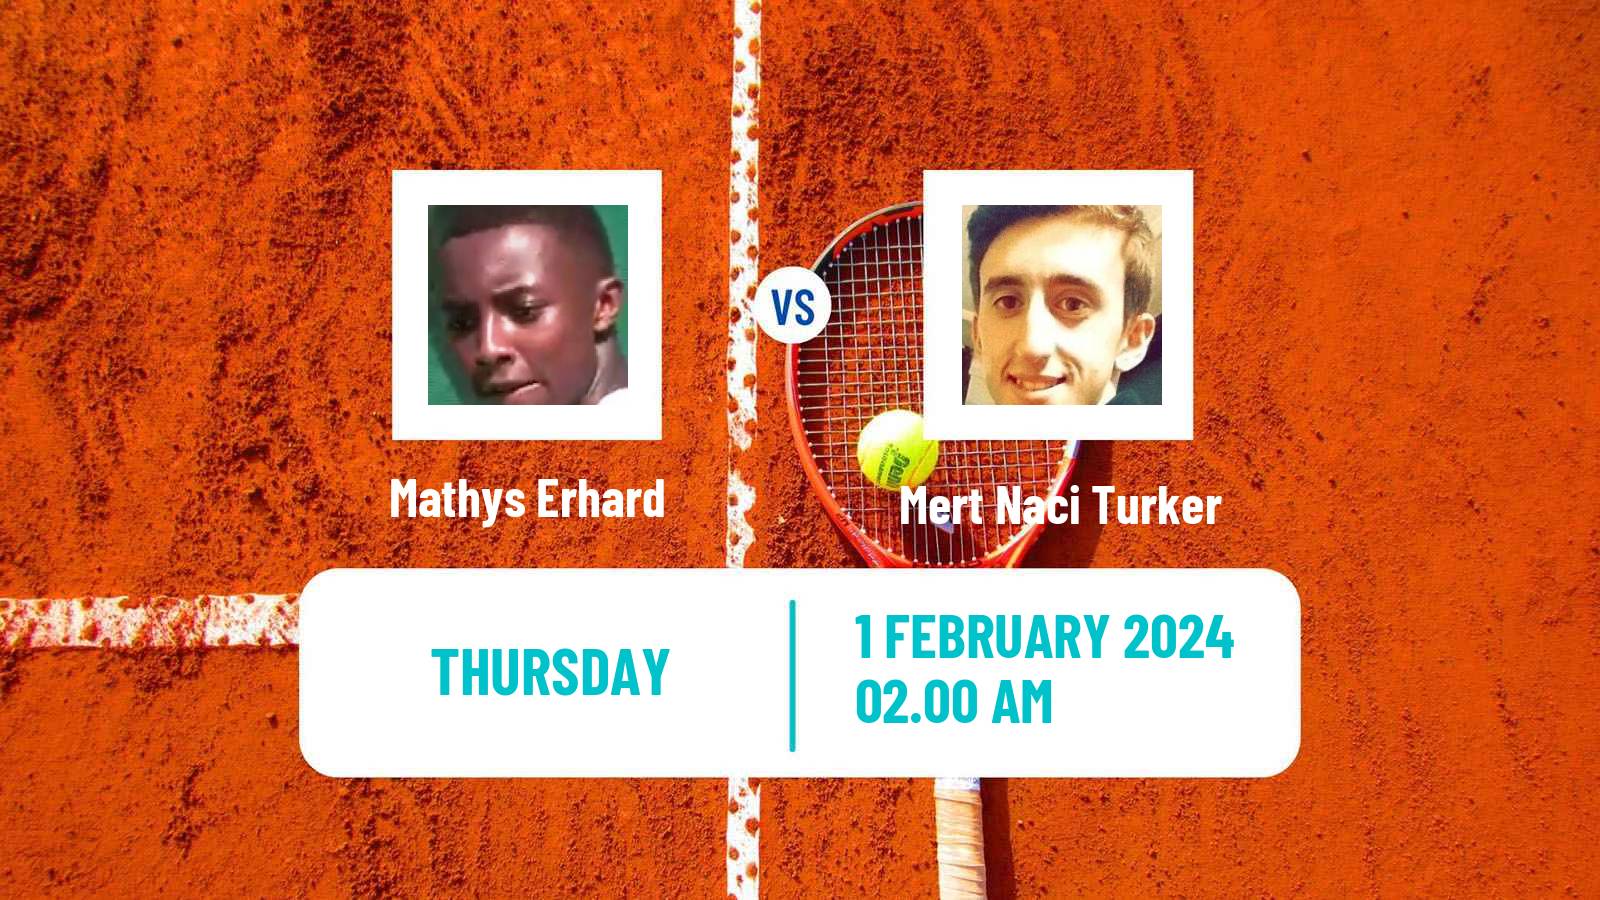 Tennis ITF M25 Antalya Men Mathys Erhard - Mert Naci Turker